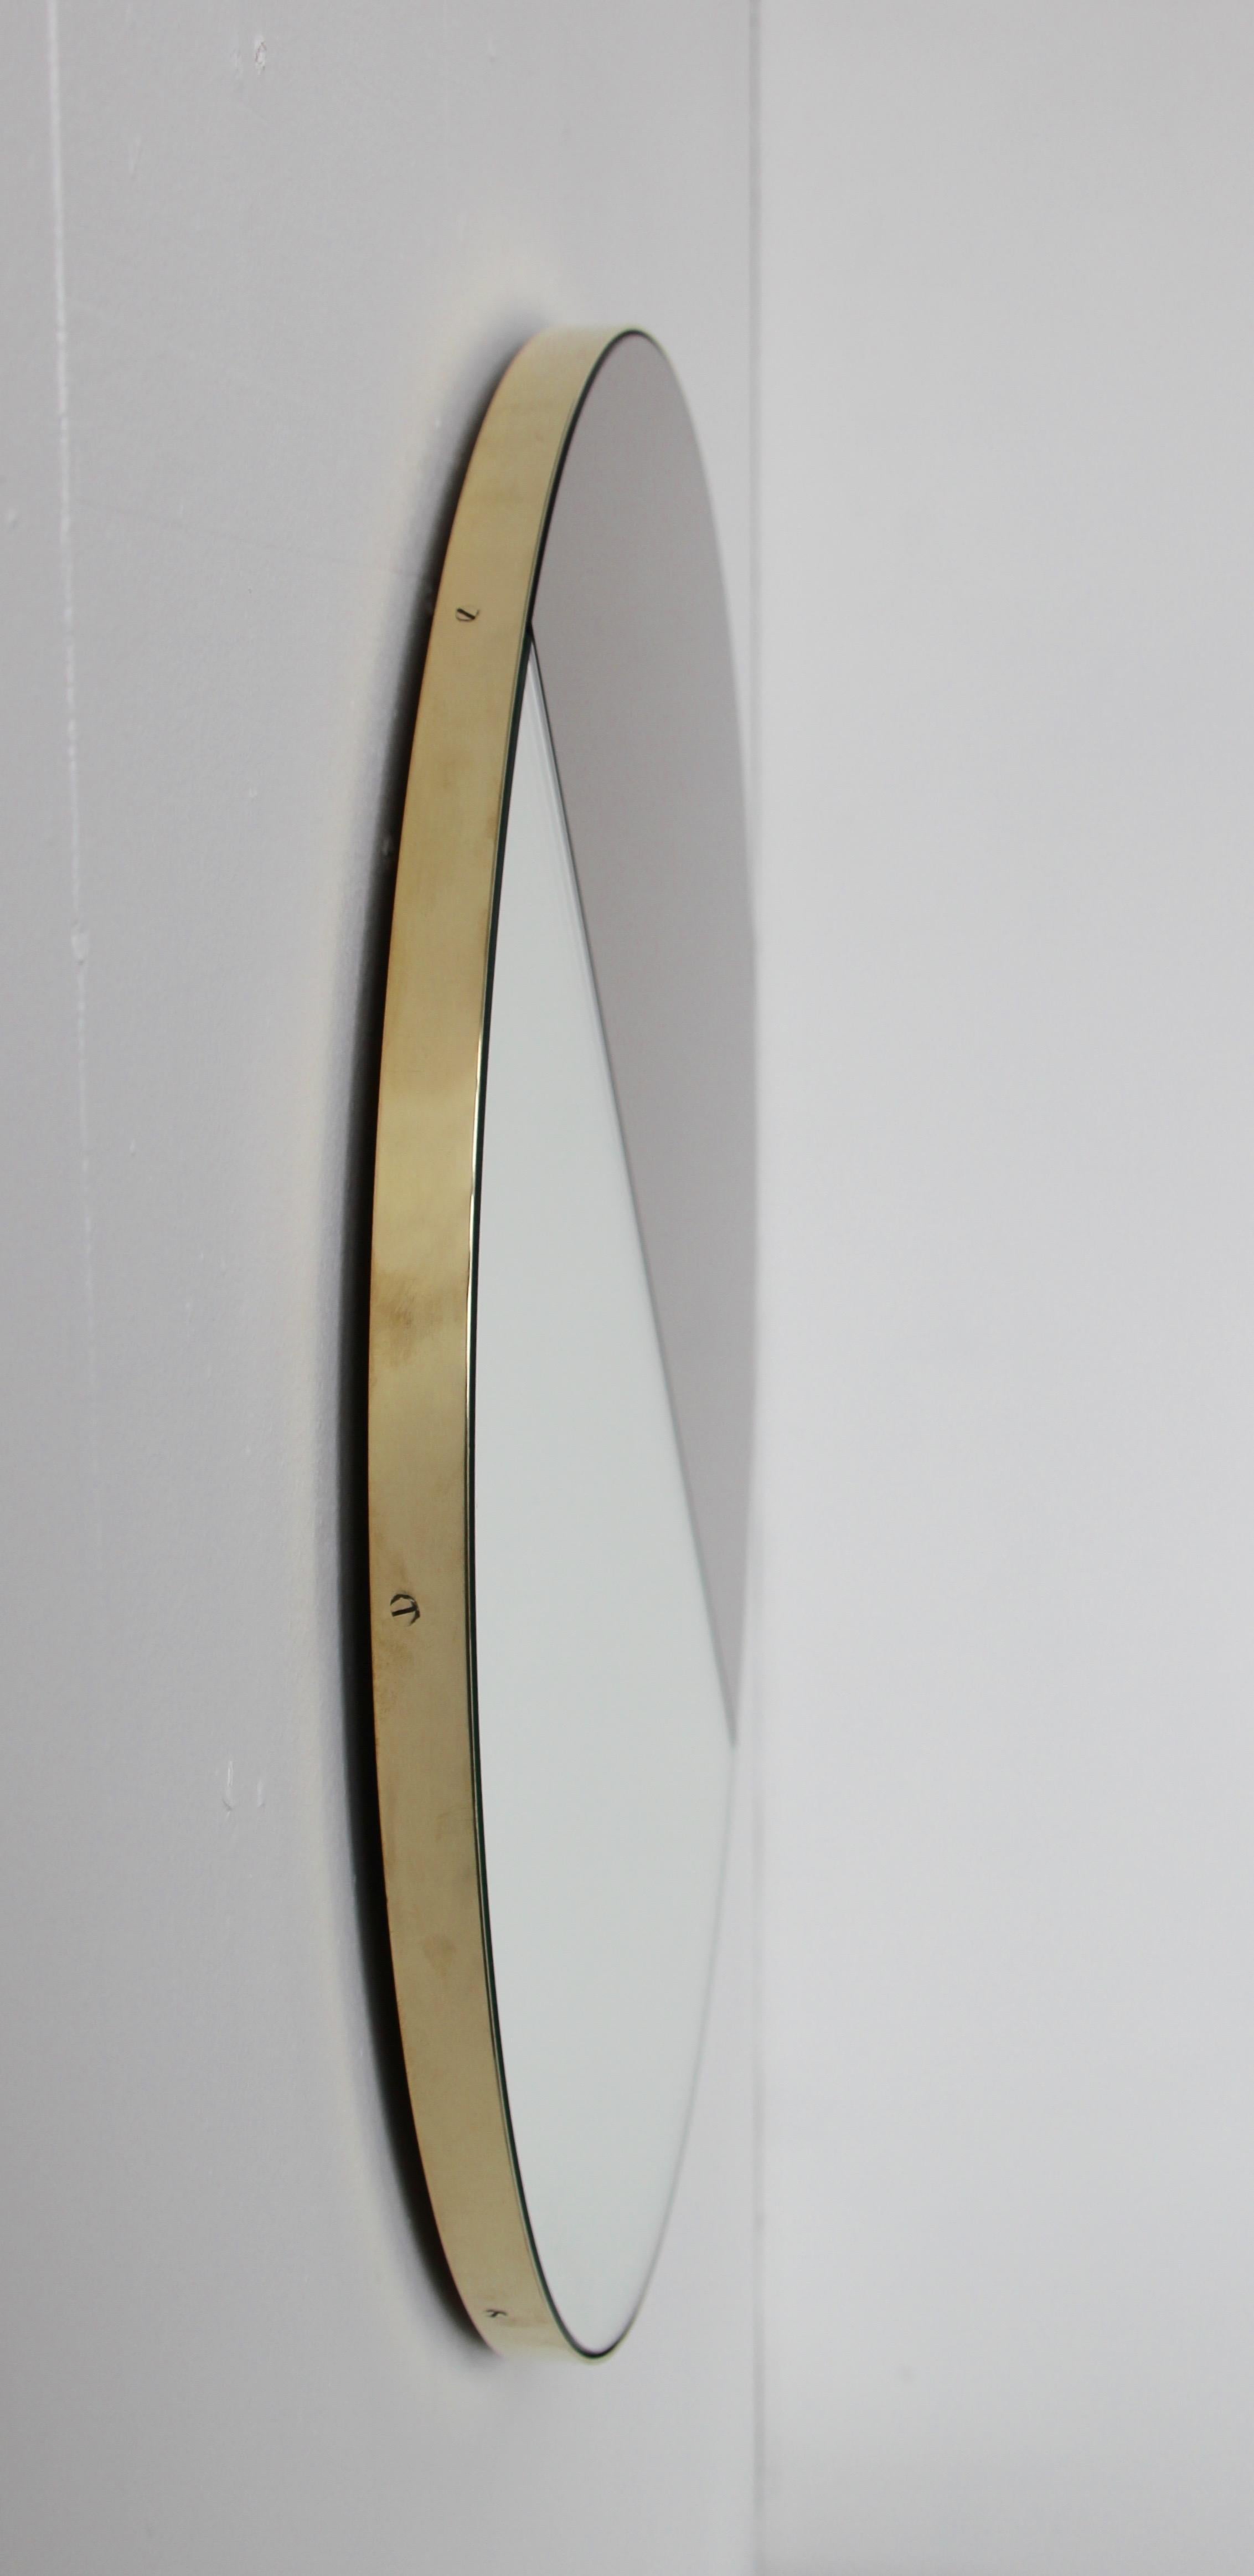 British Orbis Dualis Mixed Silver + Bronze Round Mirror with Brass Frame, Medium For Sale